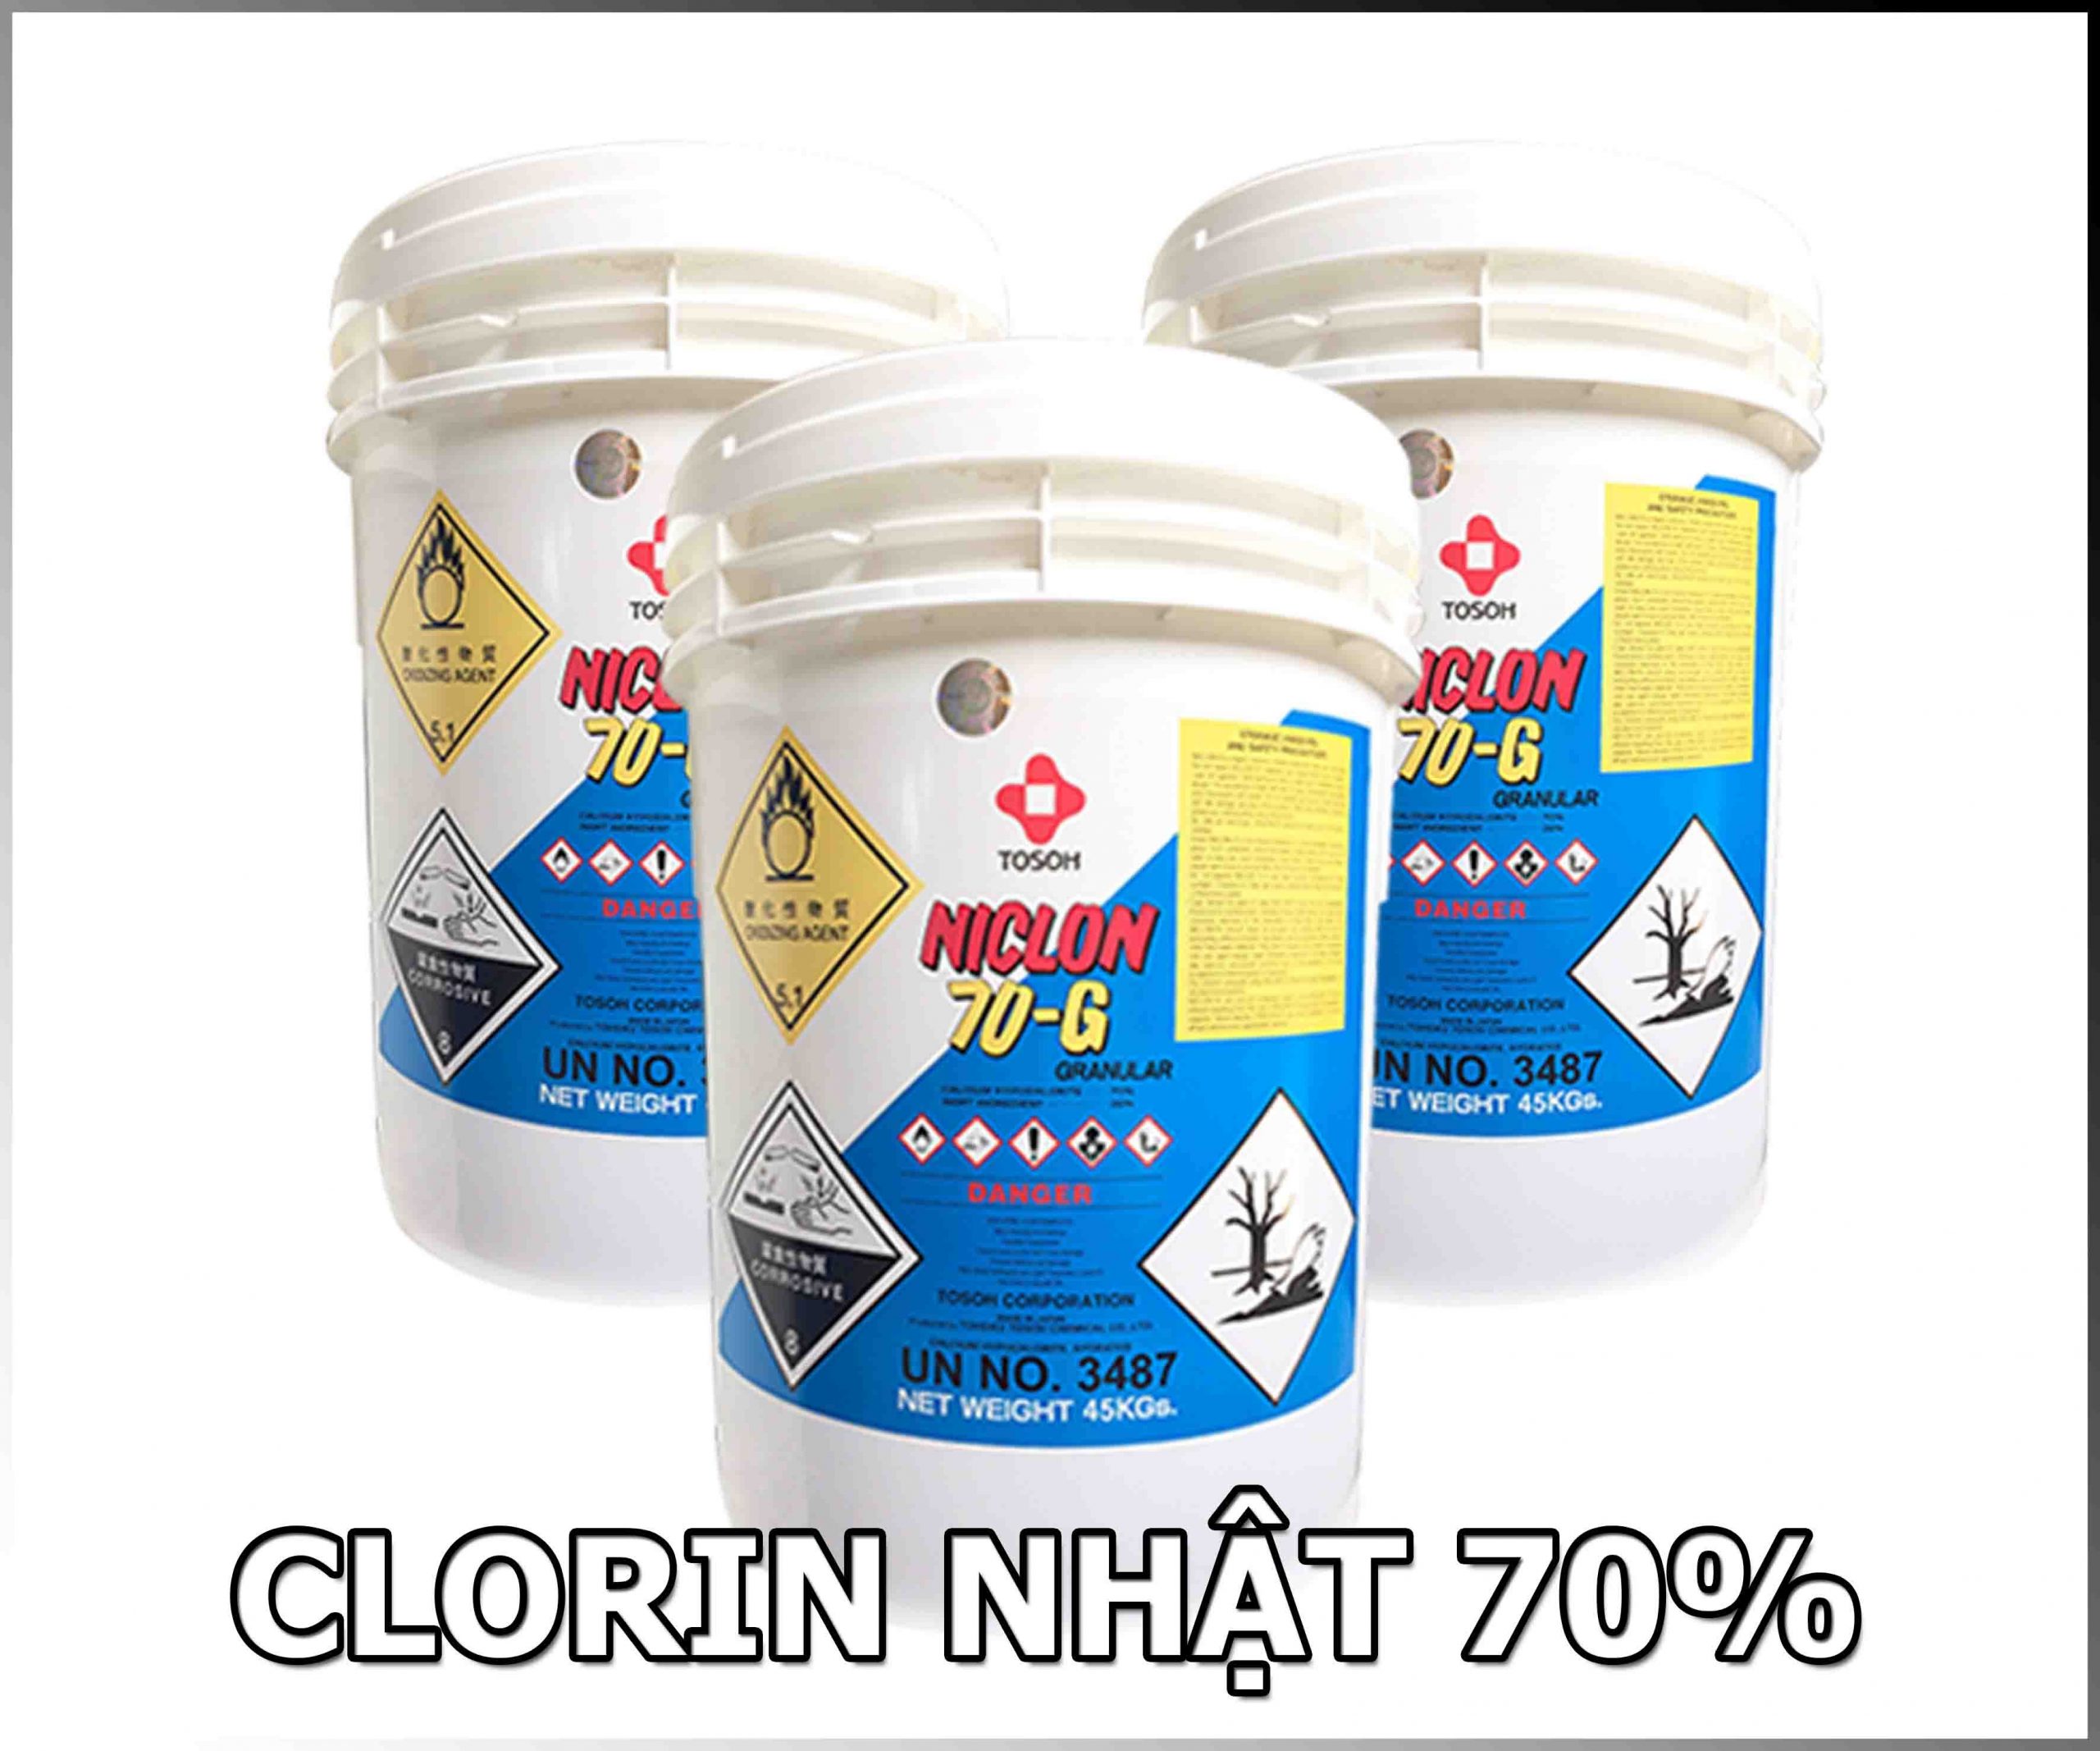 CLORIN NHẬT NIPPON 70% - Hóa chất khử trùng nước hiệu quả cao